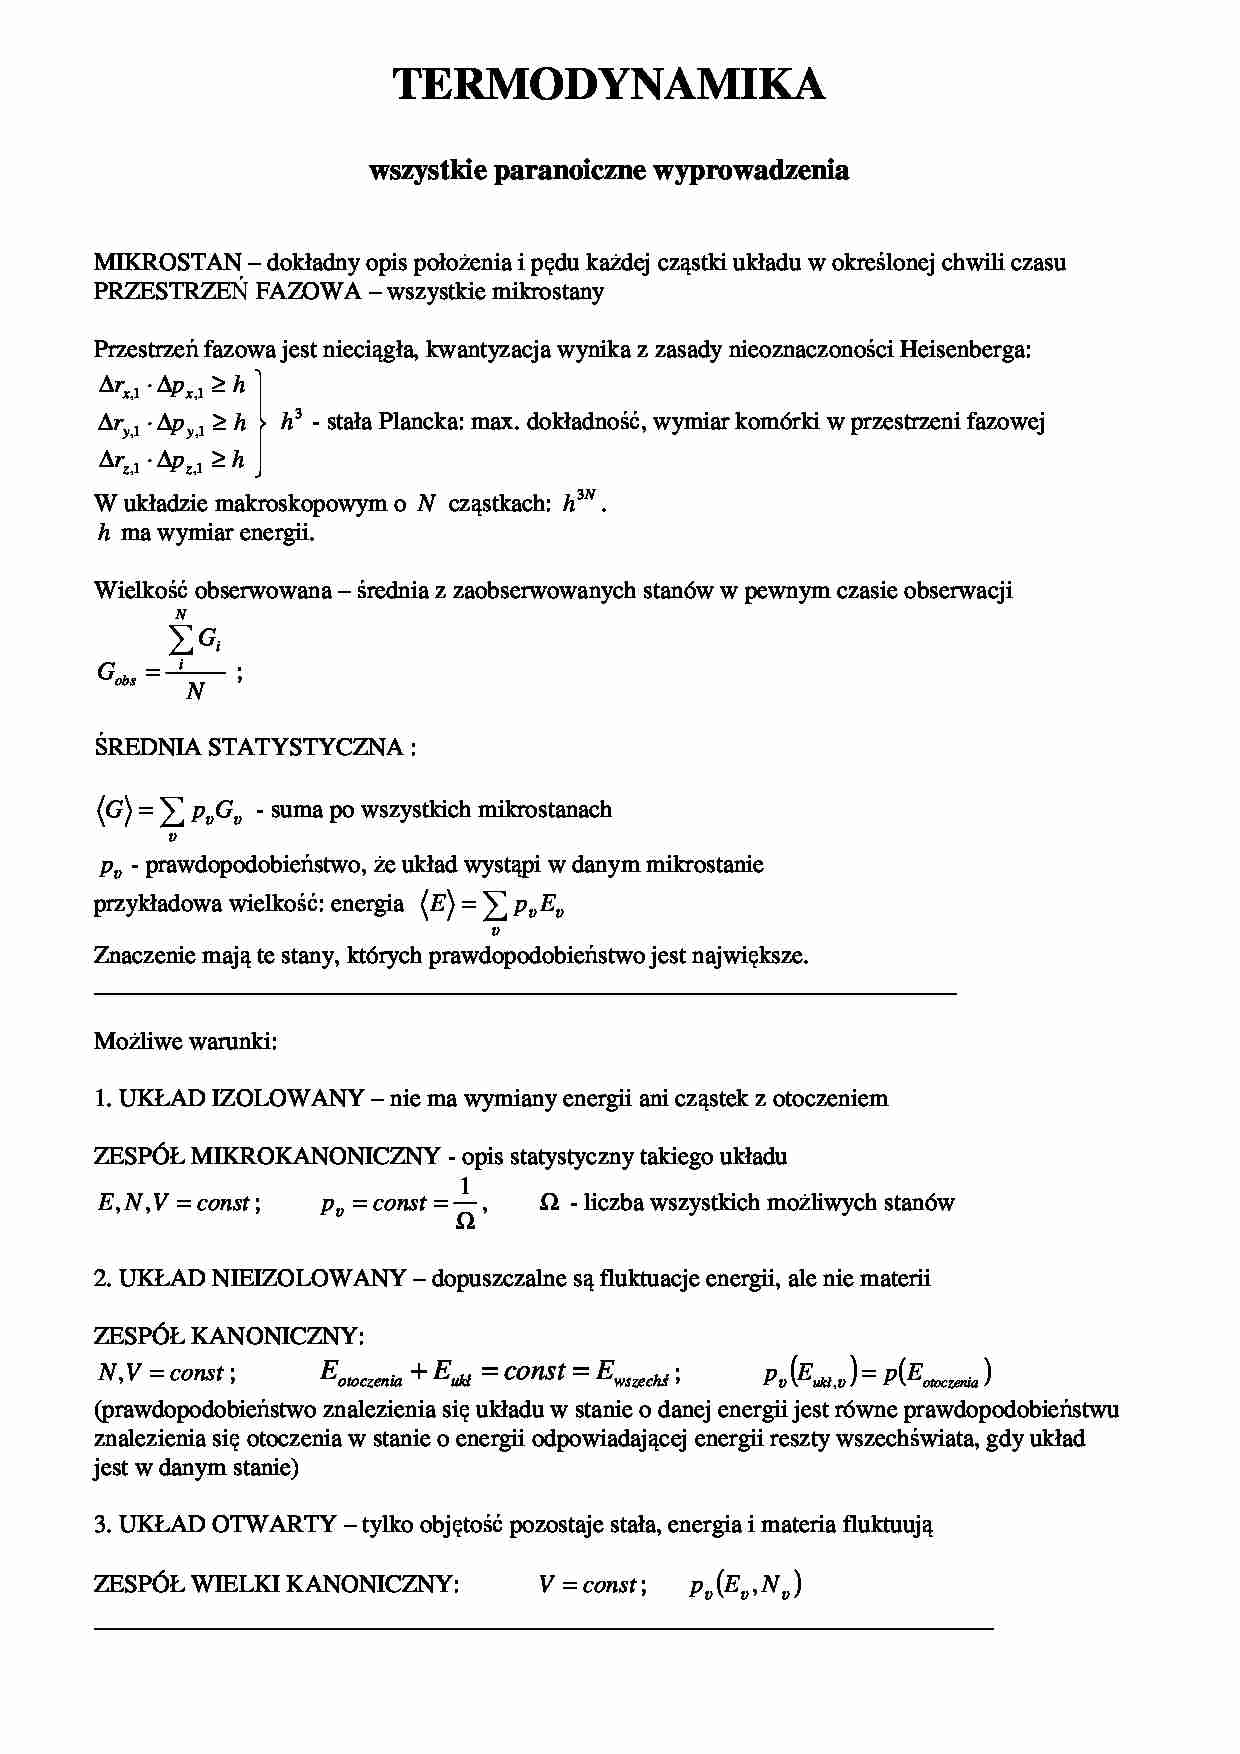 Termodynamika chemiczna i materiałów- wyprowadzenia wzorów - strona 1